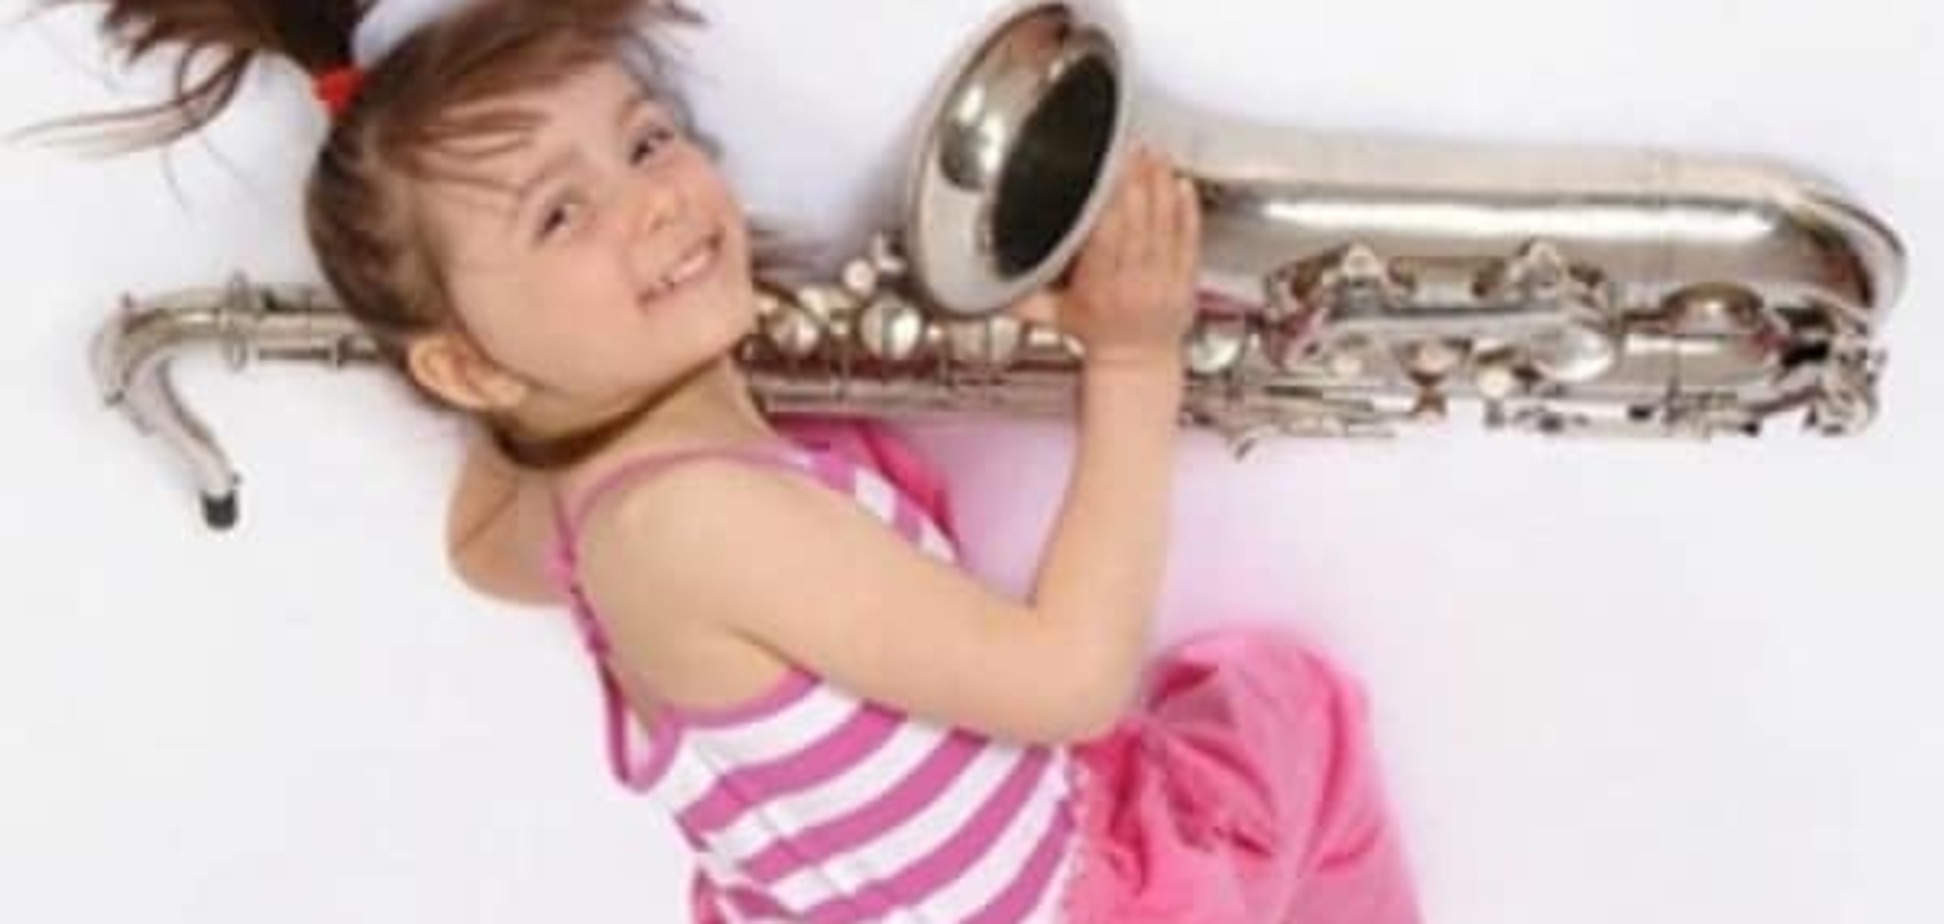 Инструменты в музыкальных школах могут быть небезопасны для ребенка